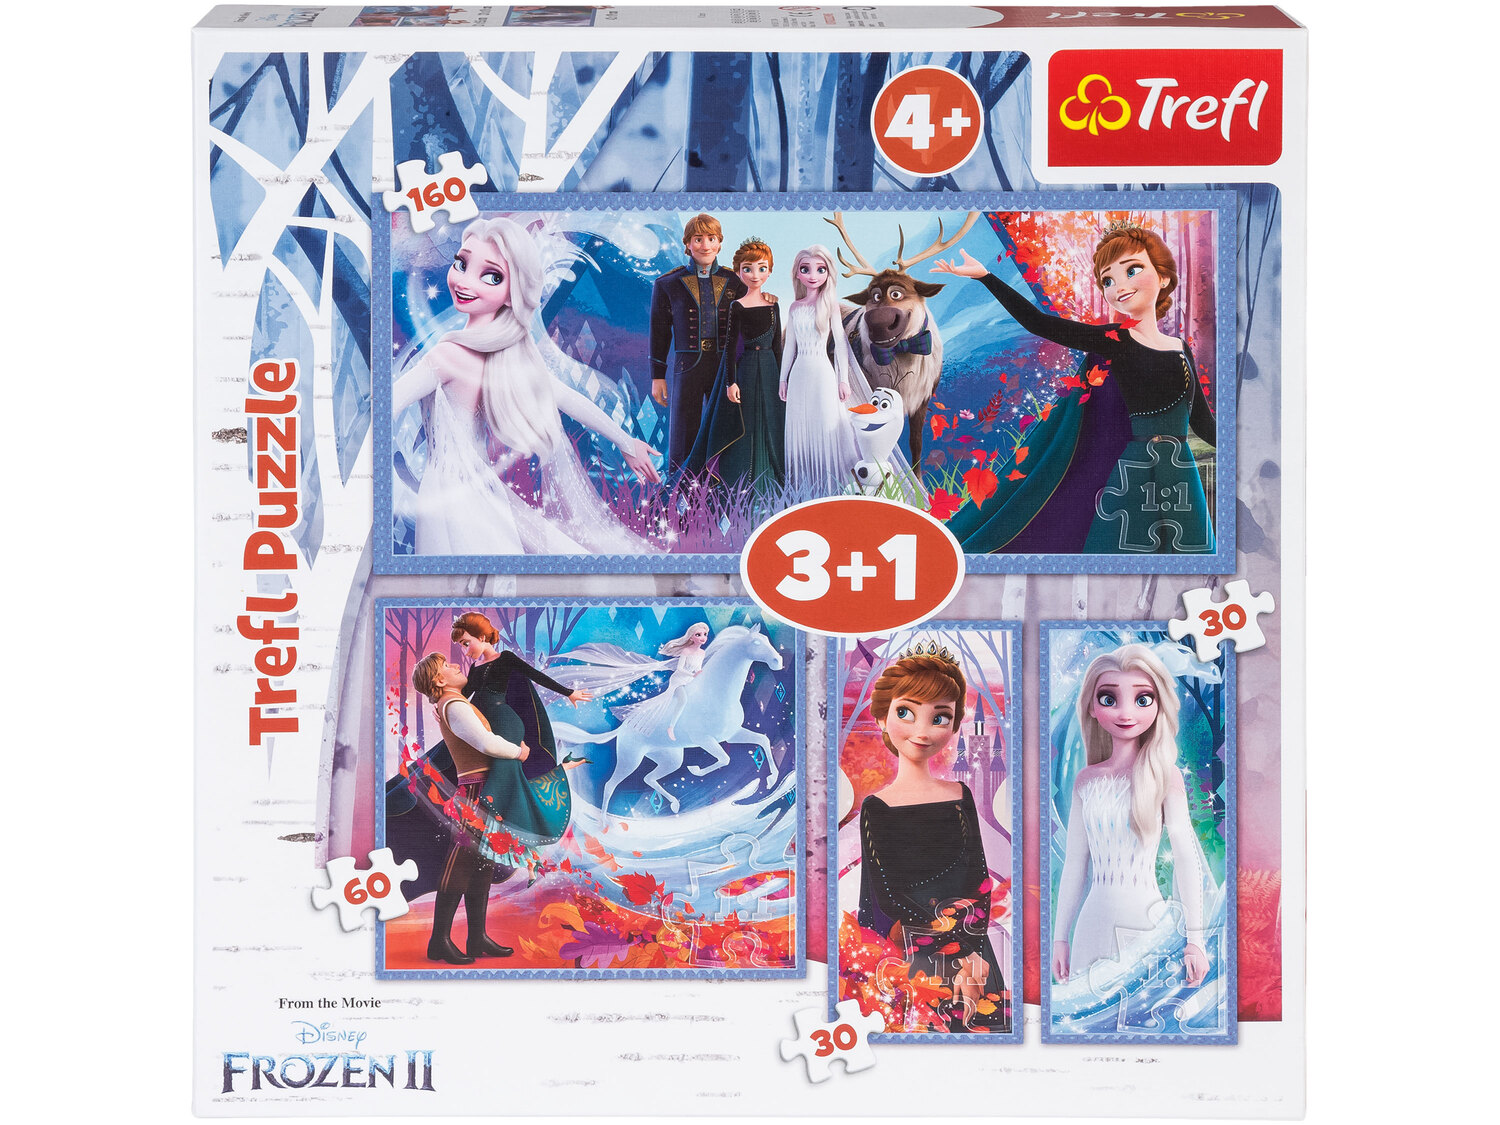 Puzzle Trefl, cena 17,99 PLN  
4 zestawy do wyboru
Opis

- 4+